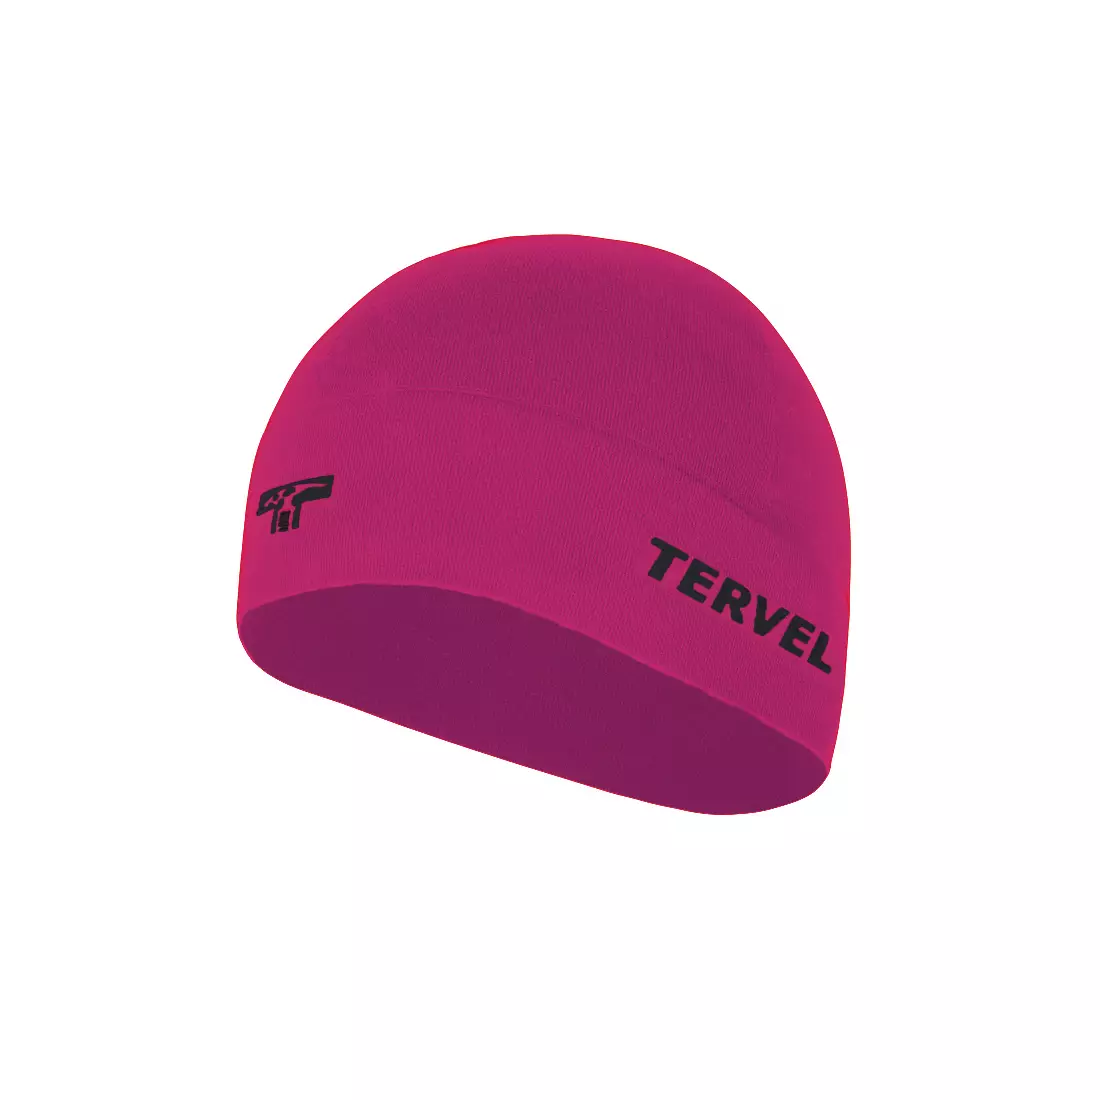 TERVEL 7001 - COMFORTLINE - tréninková čepice, barva: Růžová, velikost: Univerzální